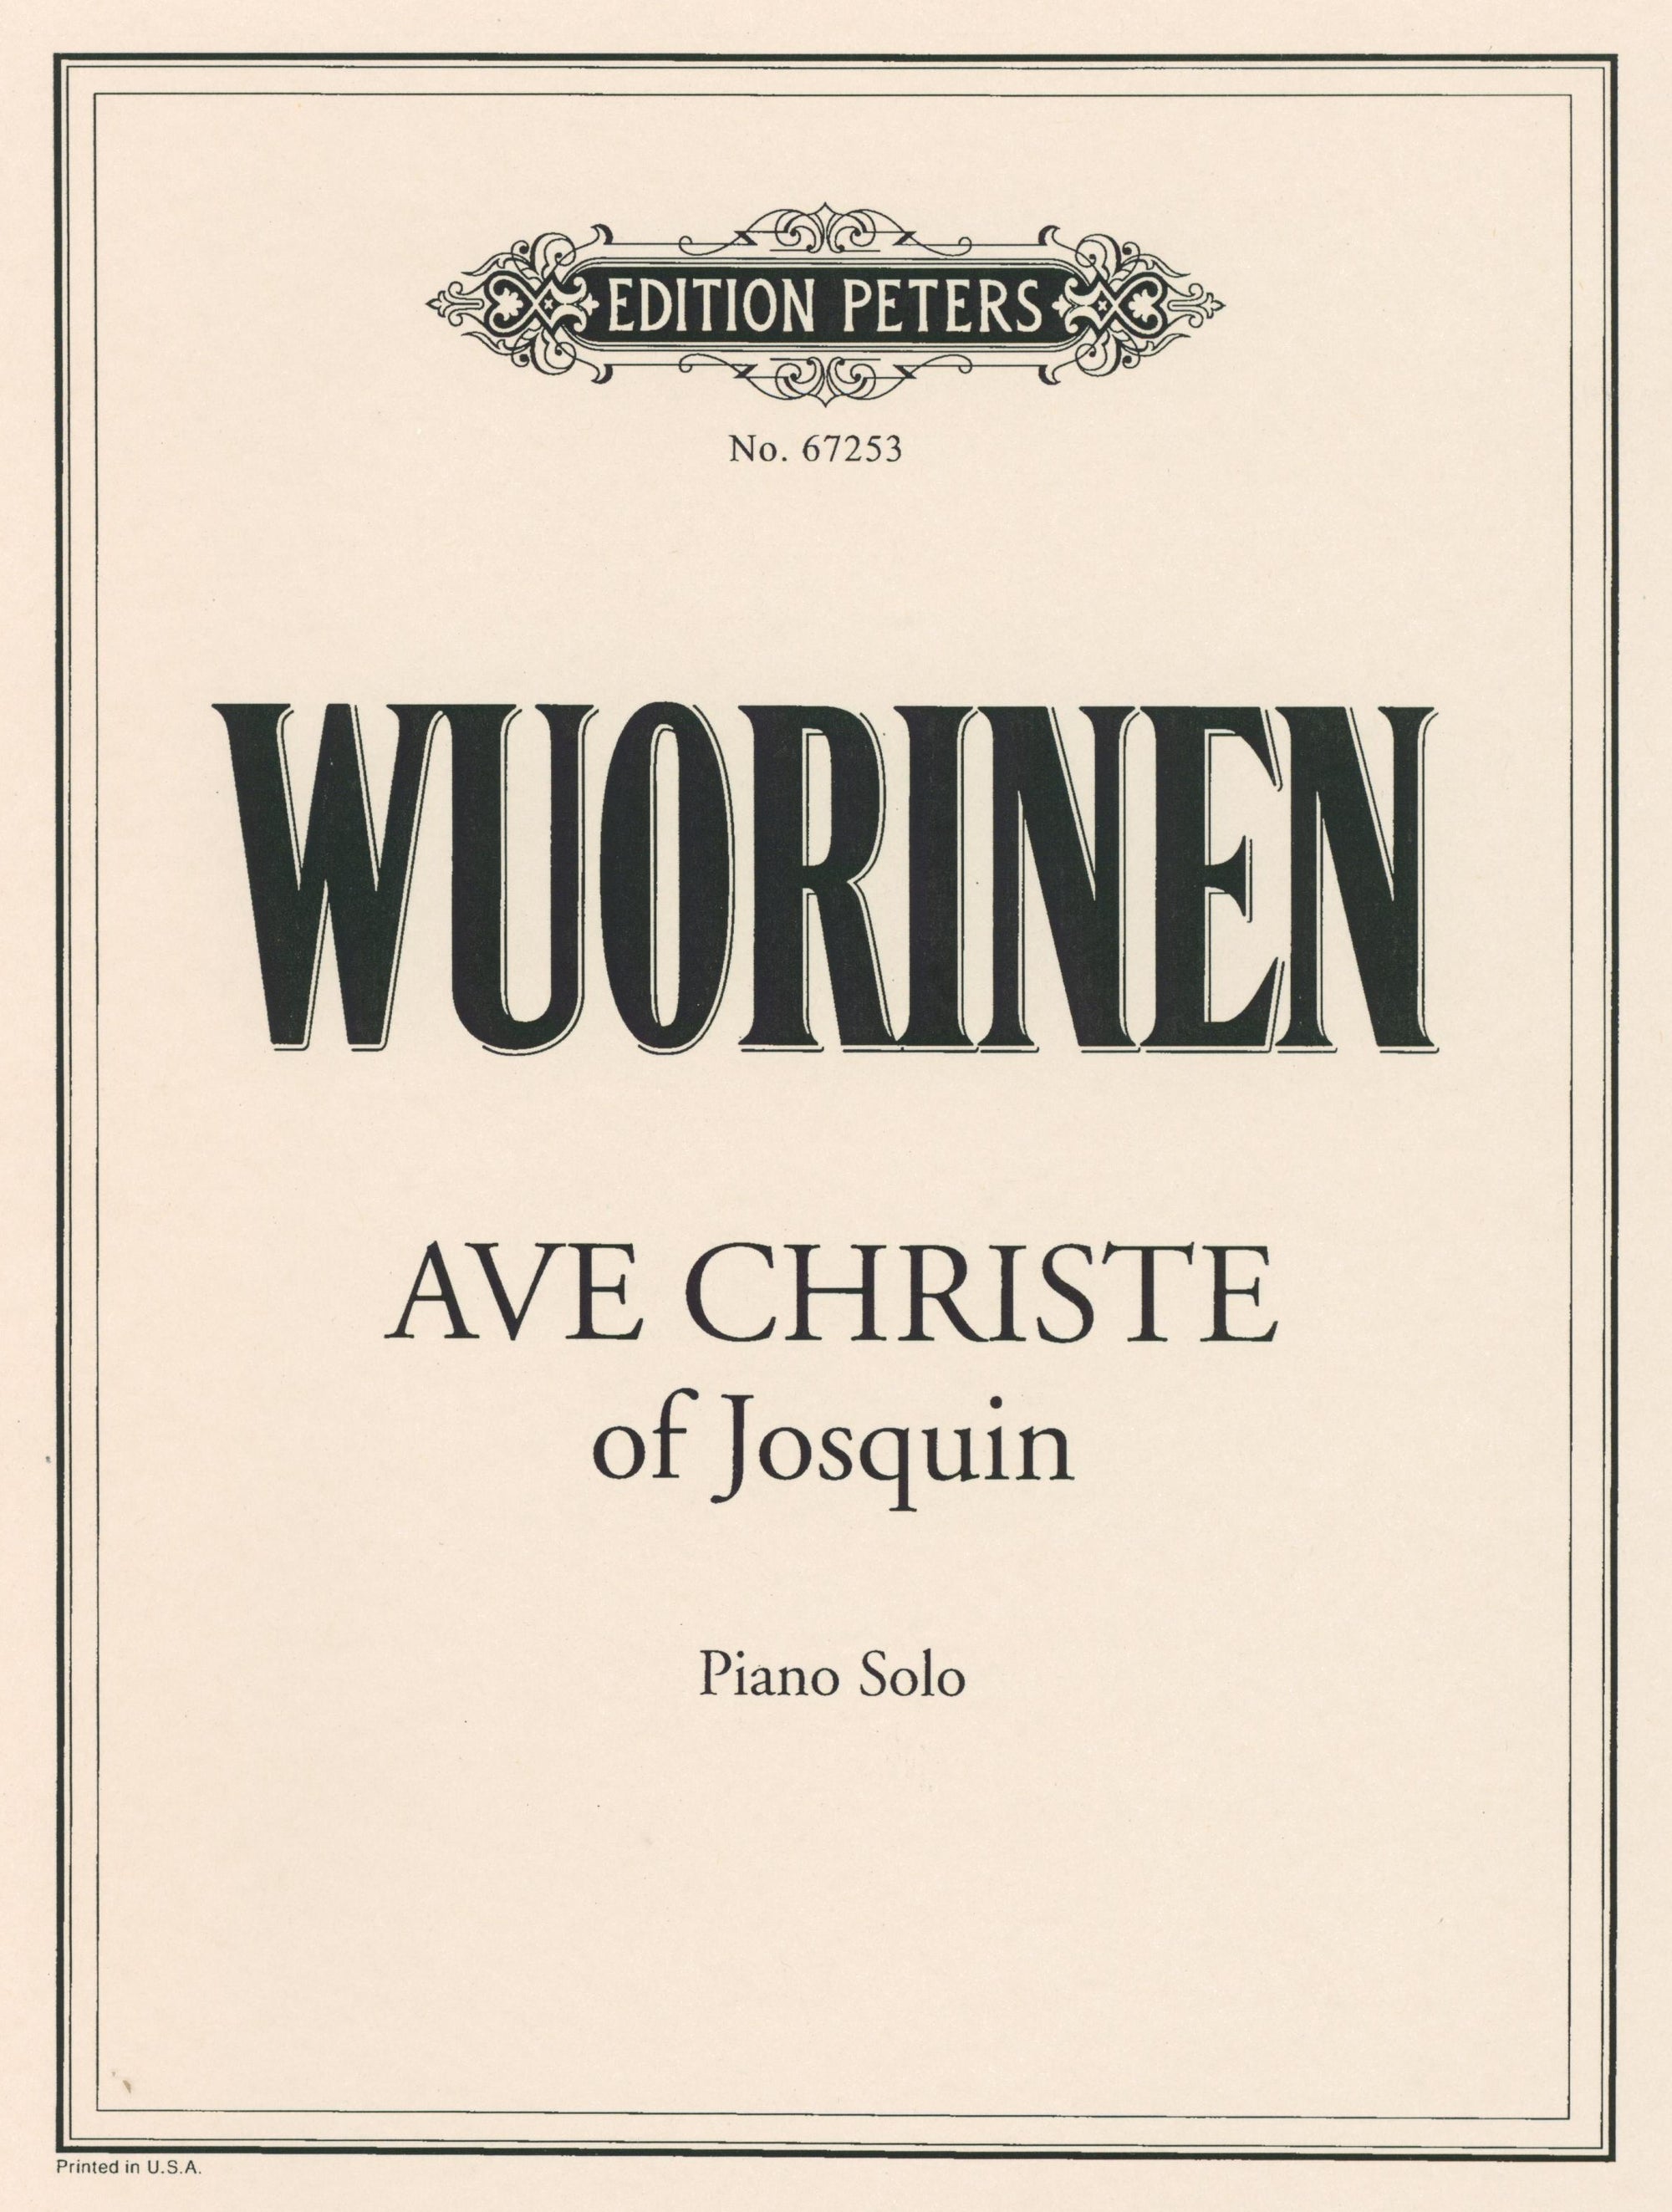 Wuorinen: Ave Christe of Josquin